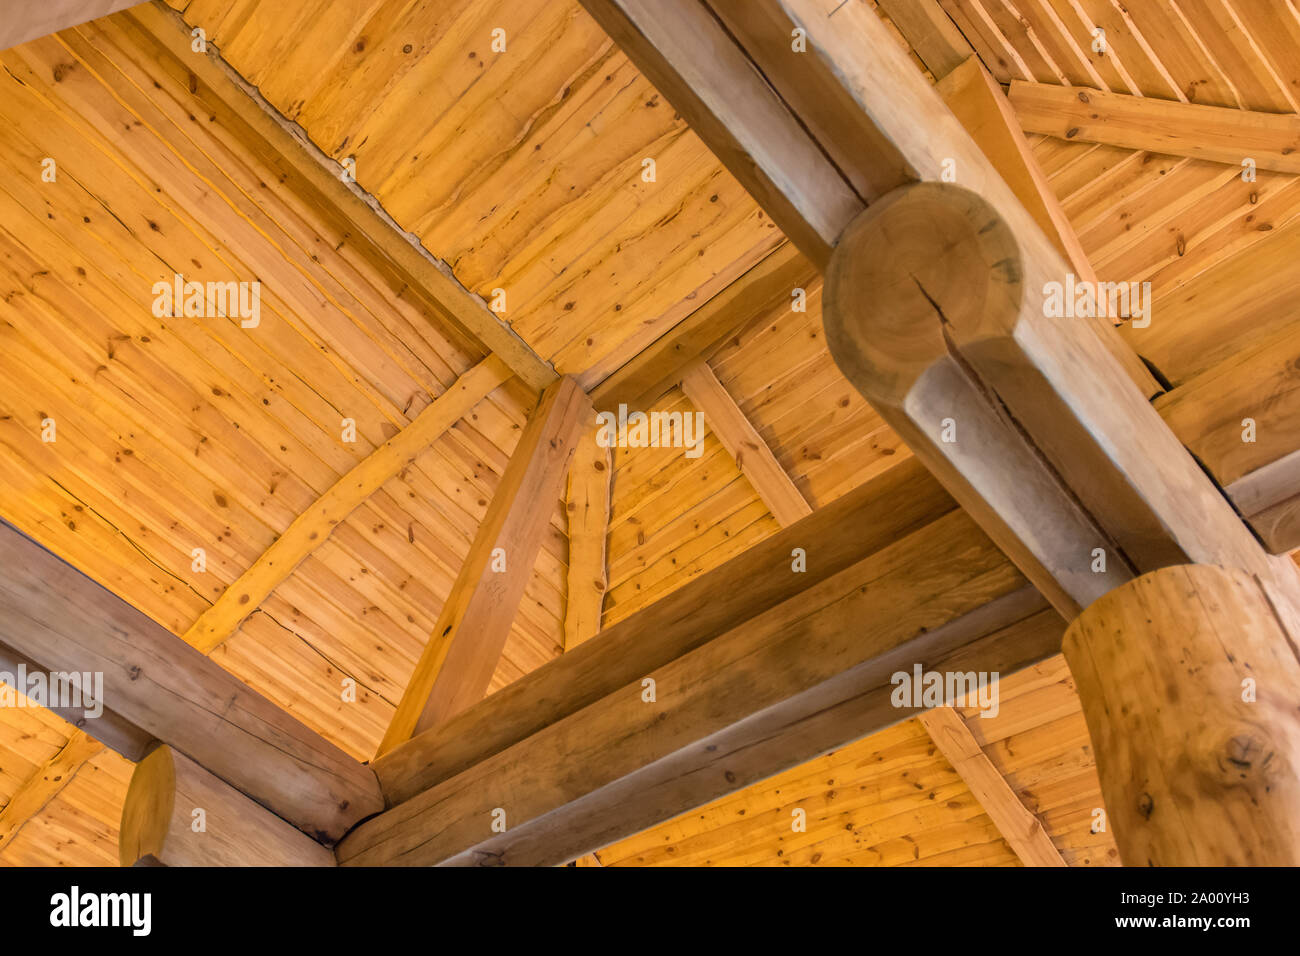 Gemütlich aussehende Dachkonstruktion von einem rustikalen Holzhaus Stockfoto